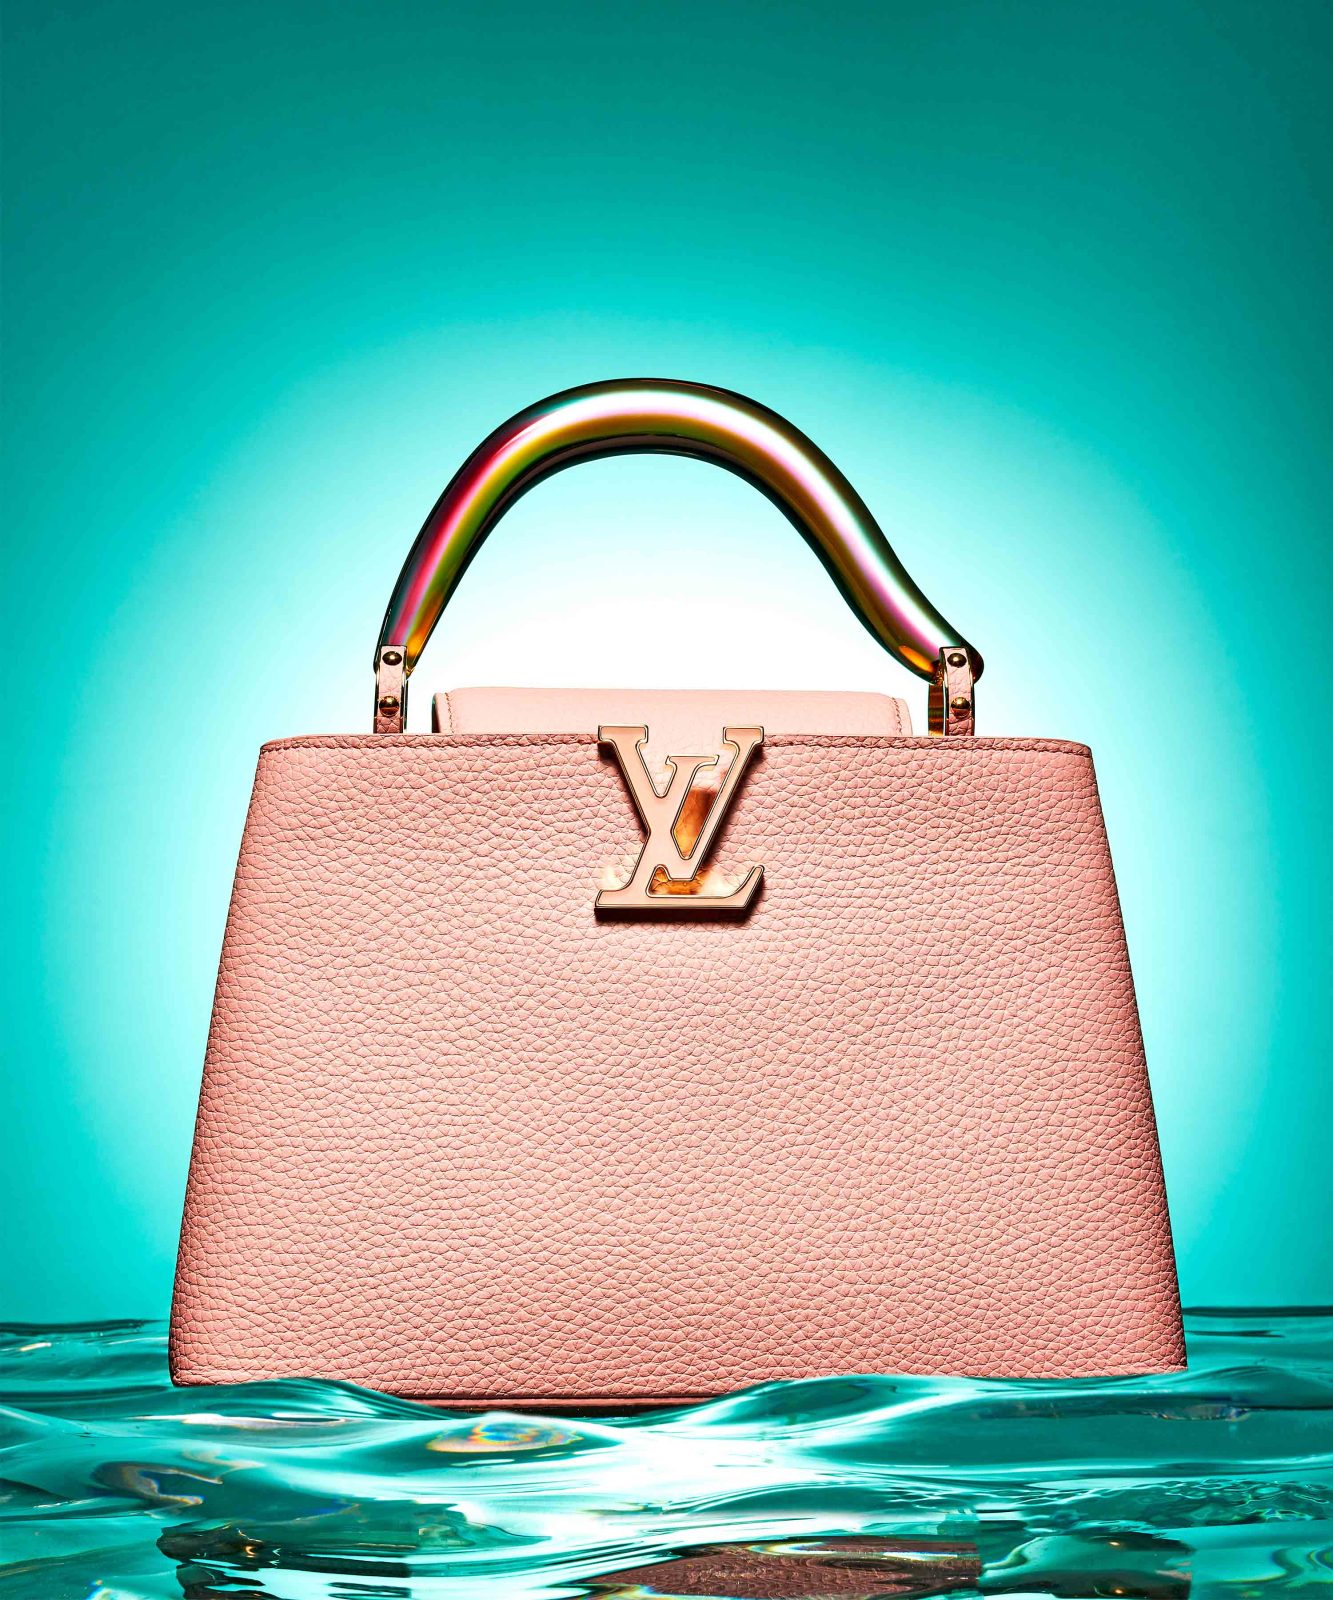 Haute Living's Exclusive Editorial Featuring Louis Vuitton's Signature Handbags